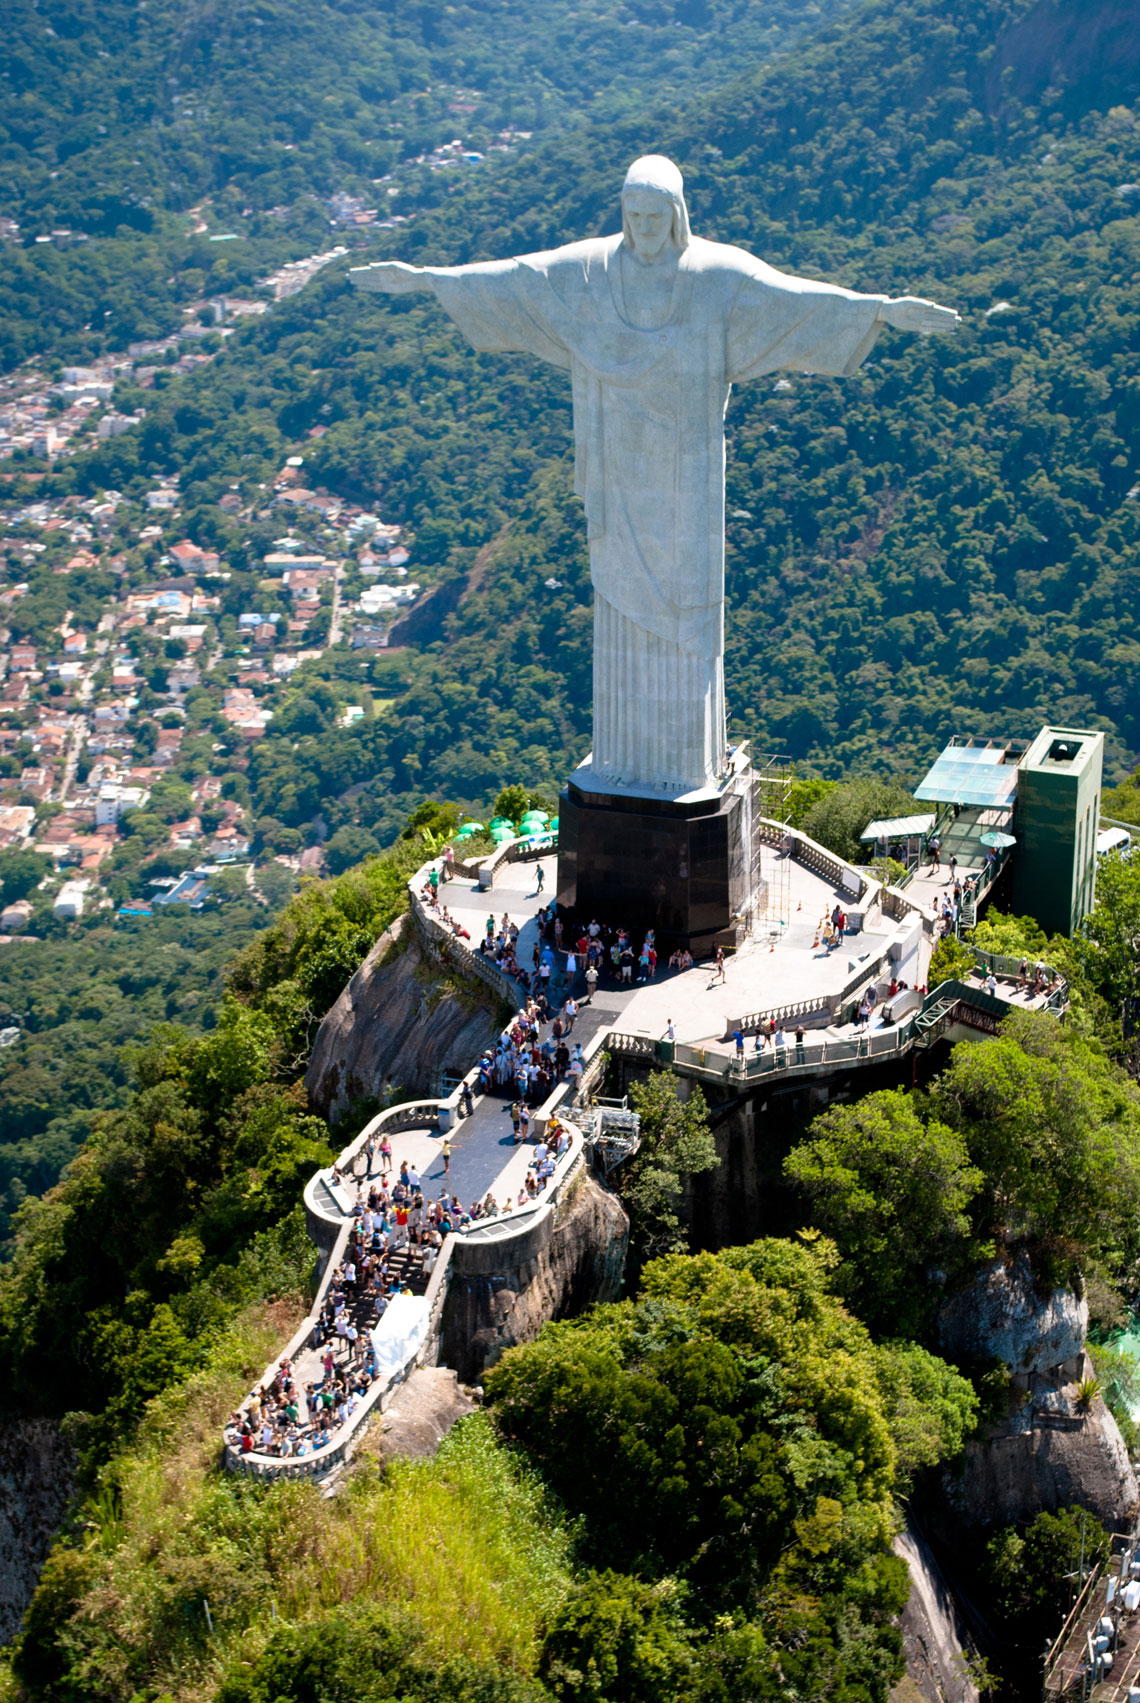 Statyn av Kristus Återlösaren i Rio de Janeiro är ett av de mest kända och populära monumenten i världen. Varje år stiger minst 1,8 miljoner turister till fots, varifrån ett panorama över staden och bukten öppnar sig med det pittoreska Sockertoppen, de berömda stränderna Copacabana och Ipanema, en enorm skål med Maracanã-stadion.